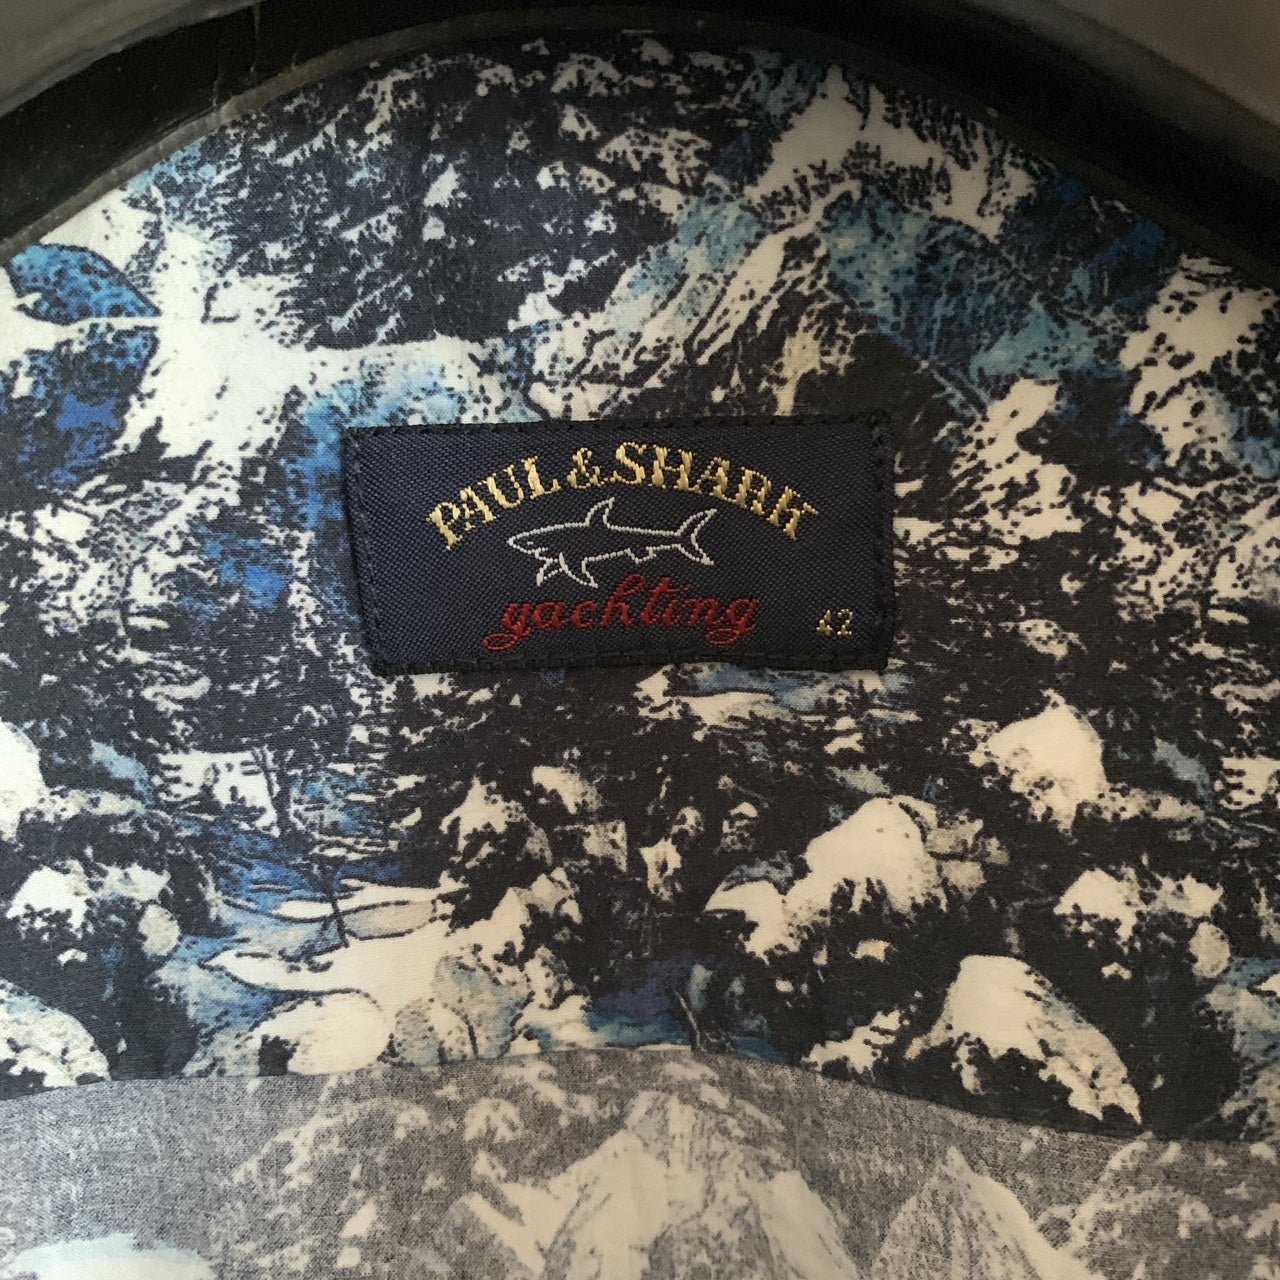 Paul & Shark Vintage 100% Cotton Alpine Print Shirt Size 42